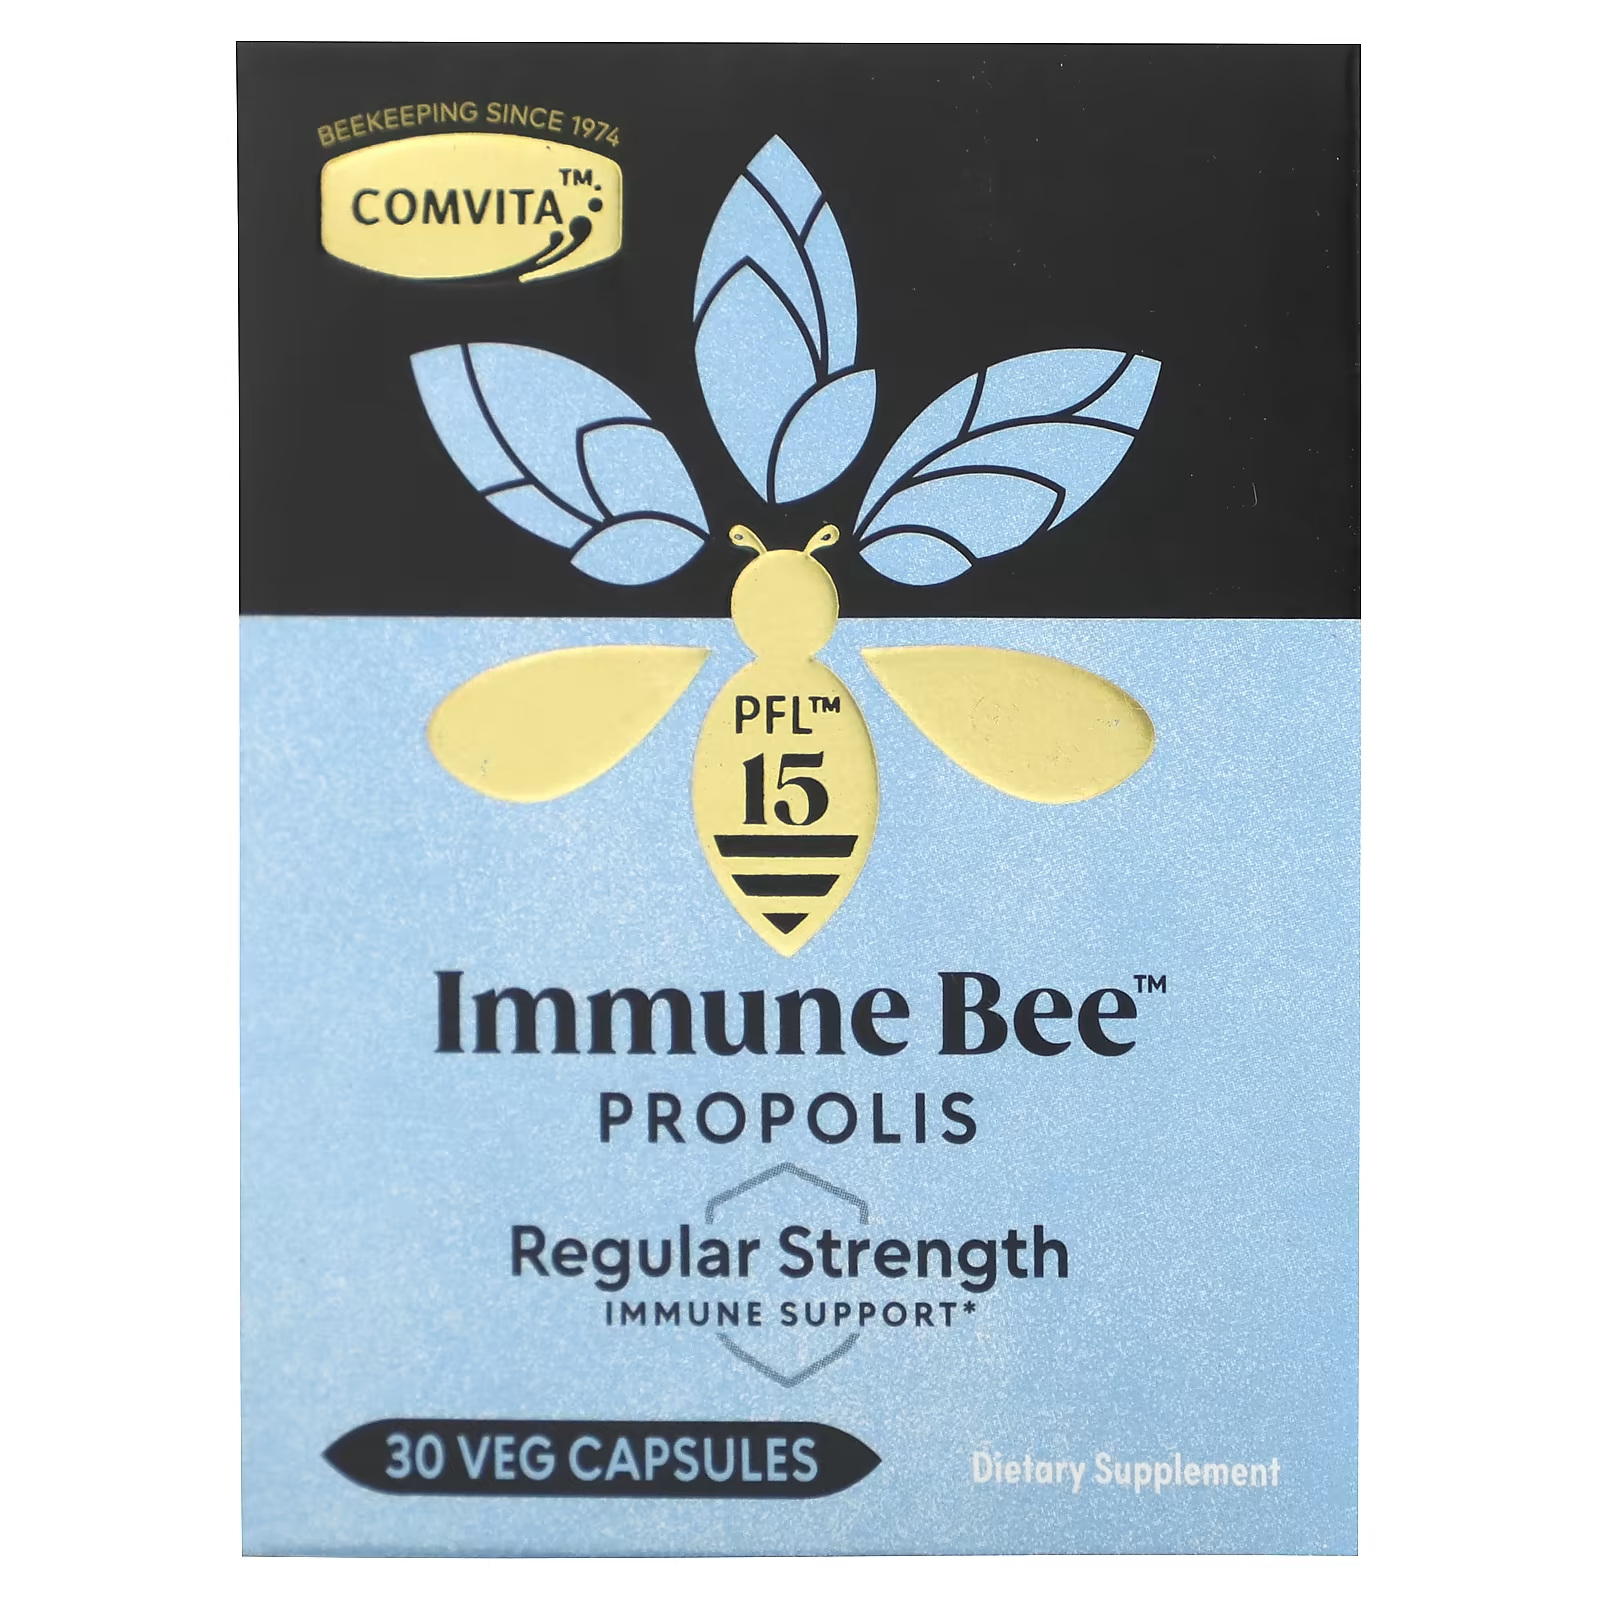 Пищевая добавка Comvita Immune Bee Propolis обычная поддержка иммунитета, 30 растительных капсул comvita immune bee propolis pfl30 30 veg capsules